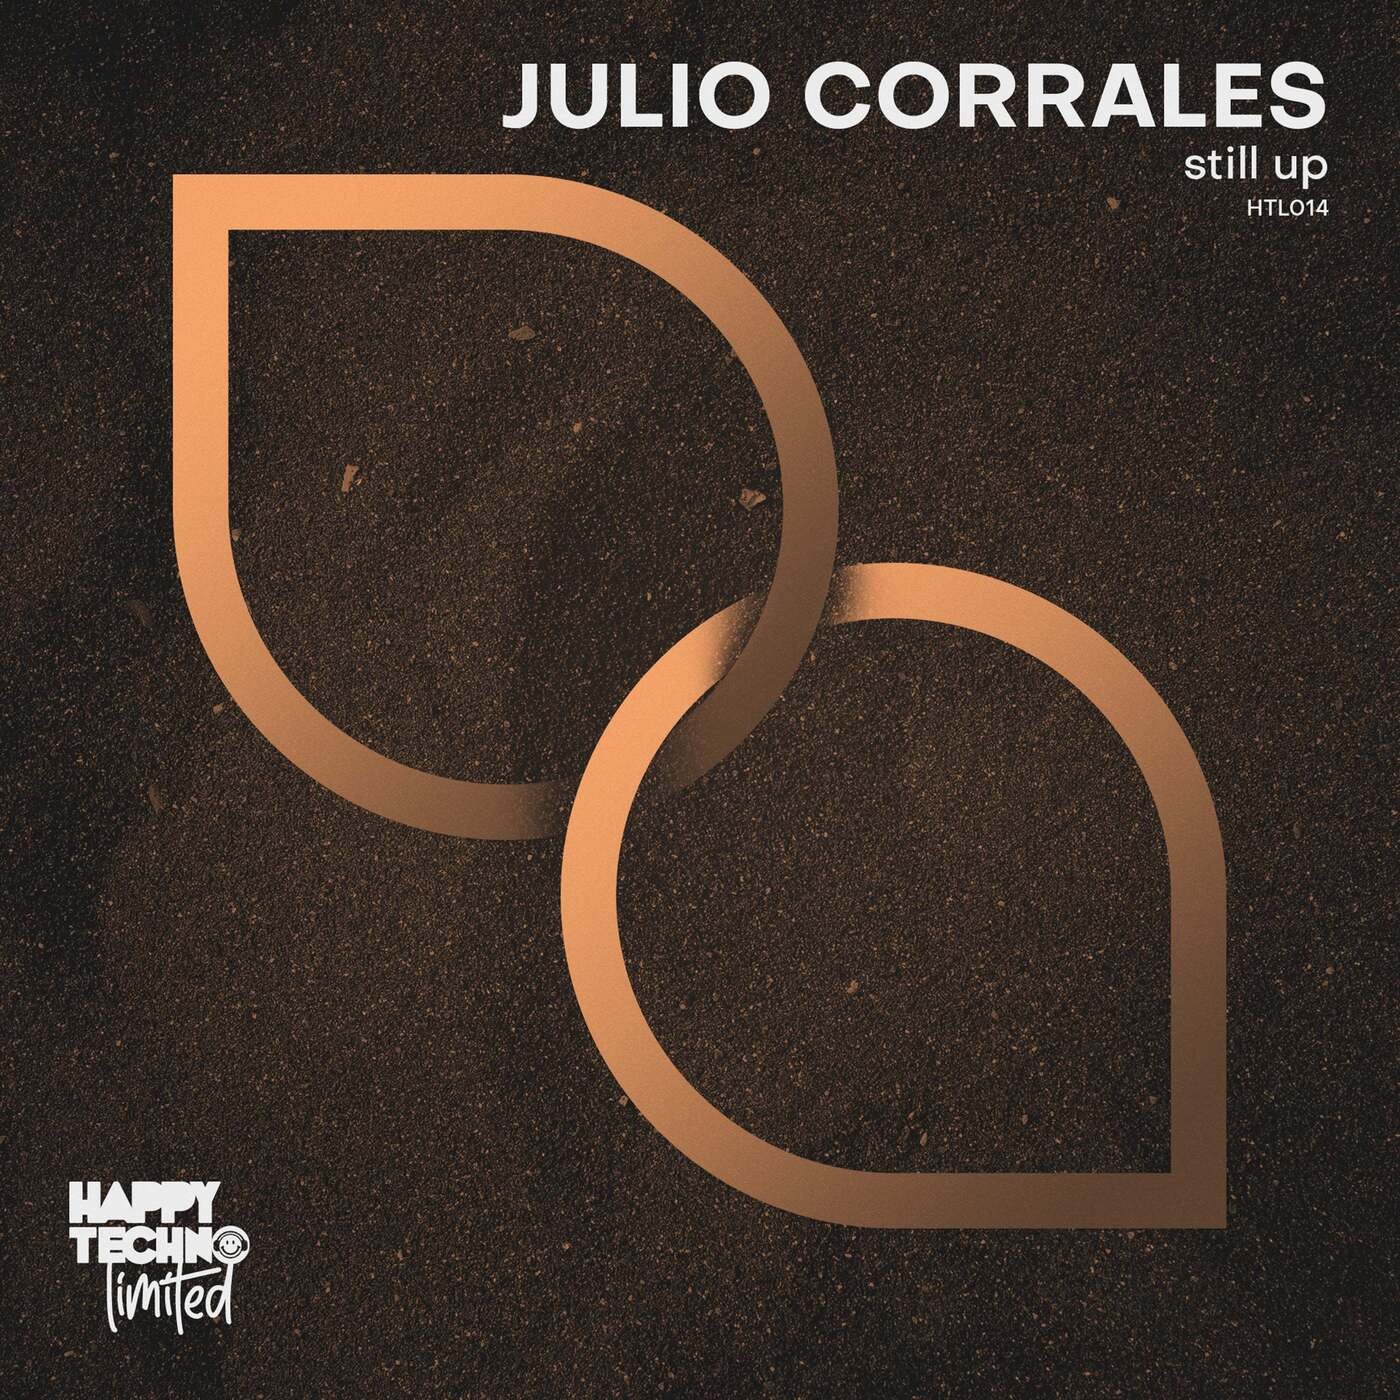 Julio Corrales – Still Up [HTL014]